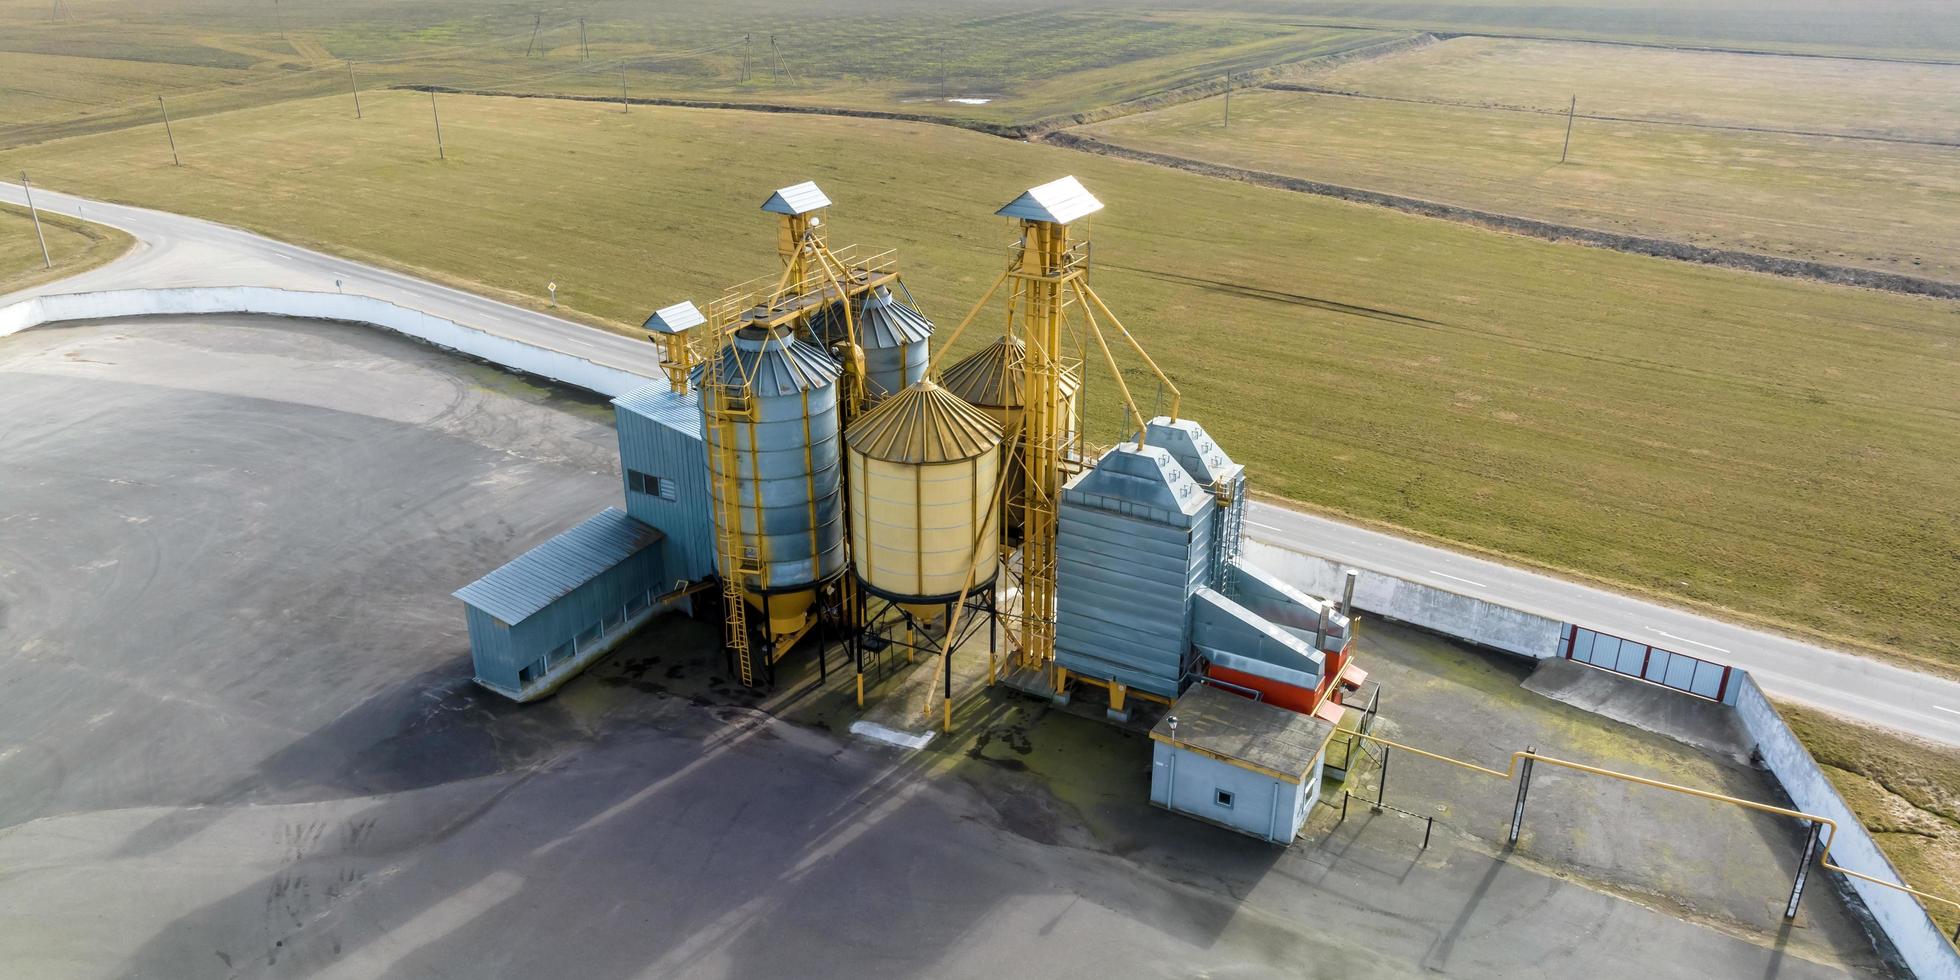 antenn panorama- se på agroindustriell komplex med silos och spannmål torkning linje för torkning rengöring och lagring av jordbruks Produkter foto